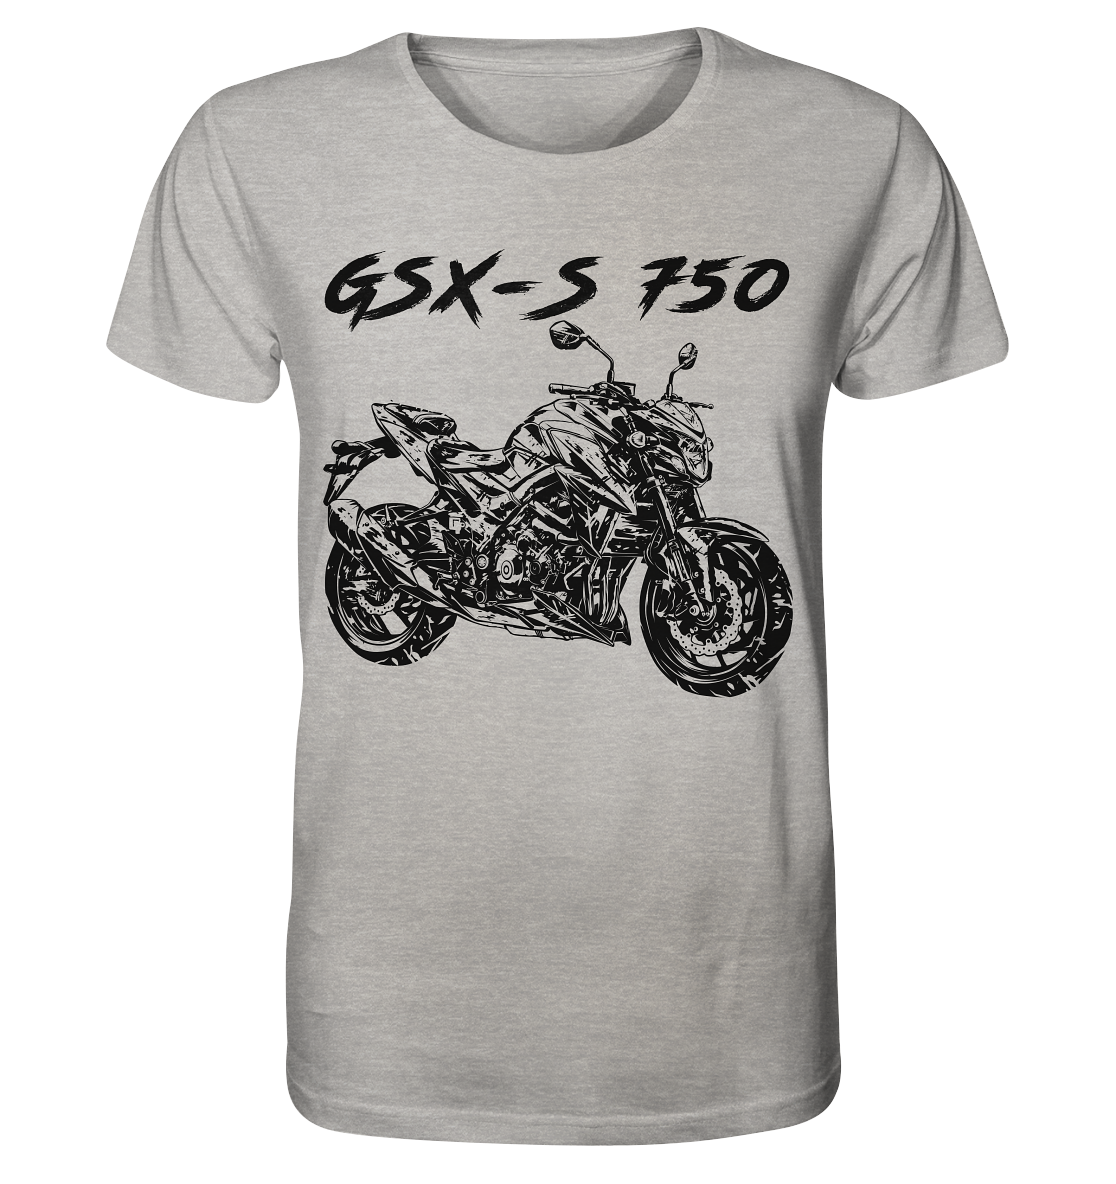 COD_1SGKGSXS750DIRTY - Organic Shirt (meliert)